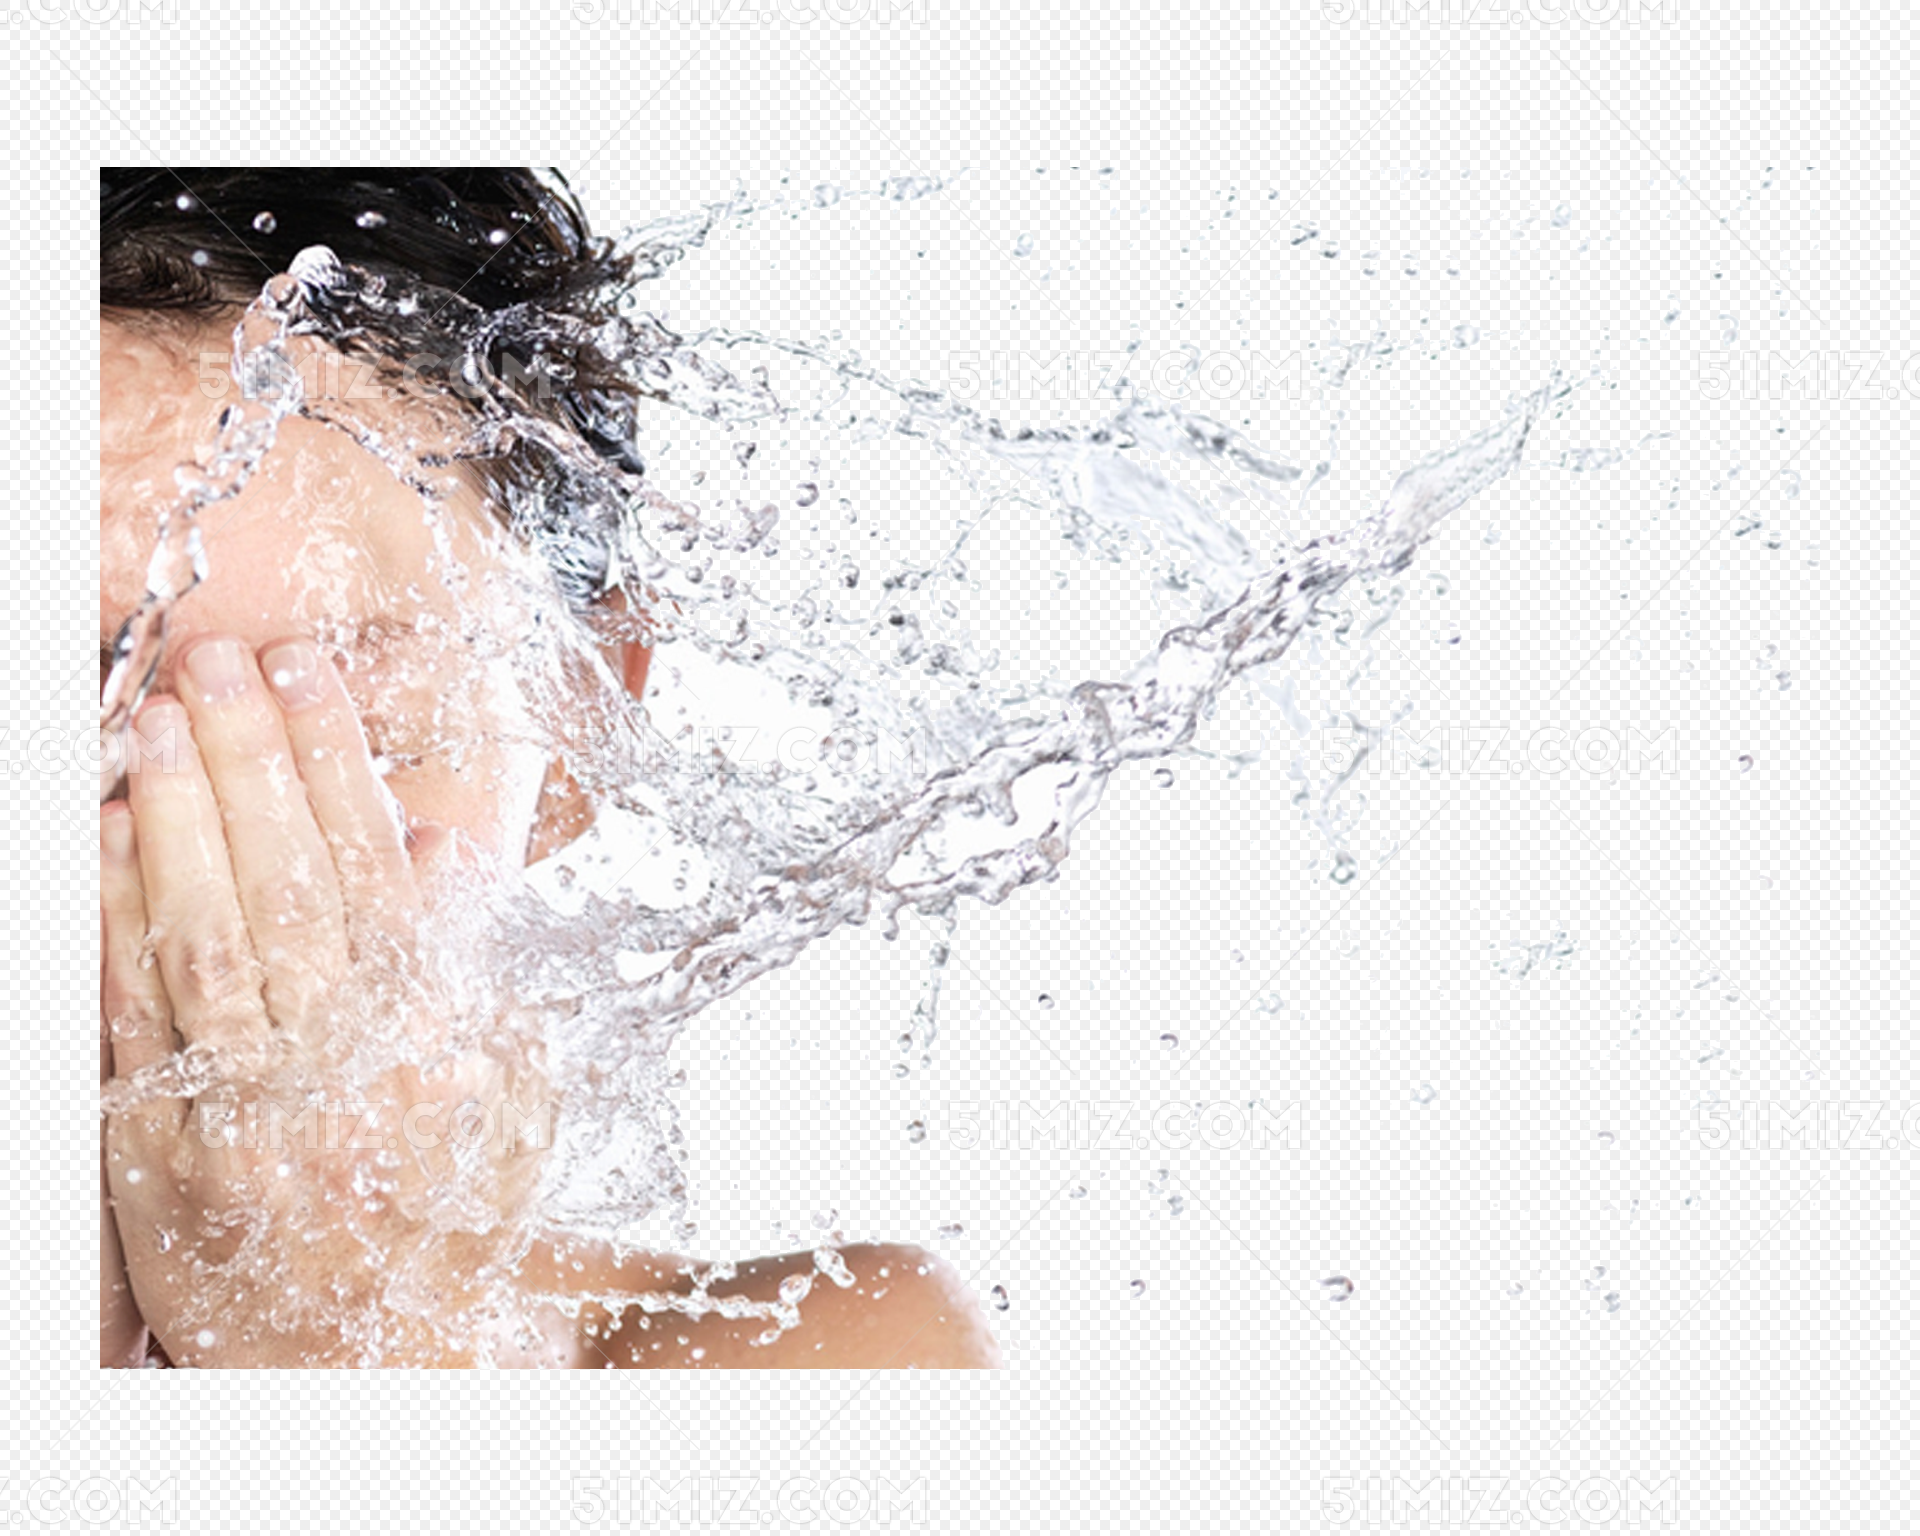 年轻女人洗脸高清摄影大图-千库网